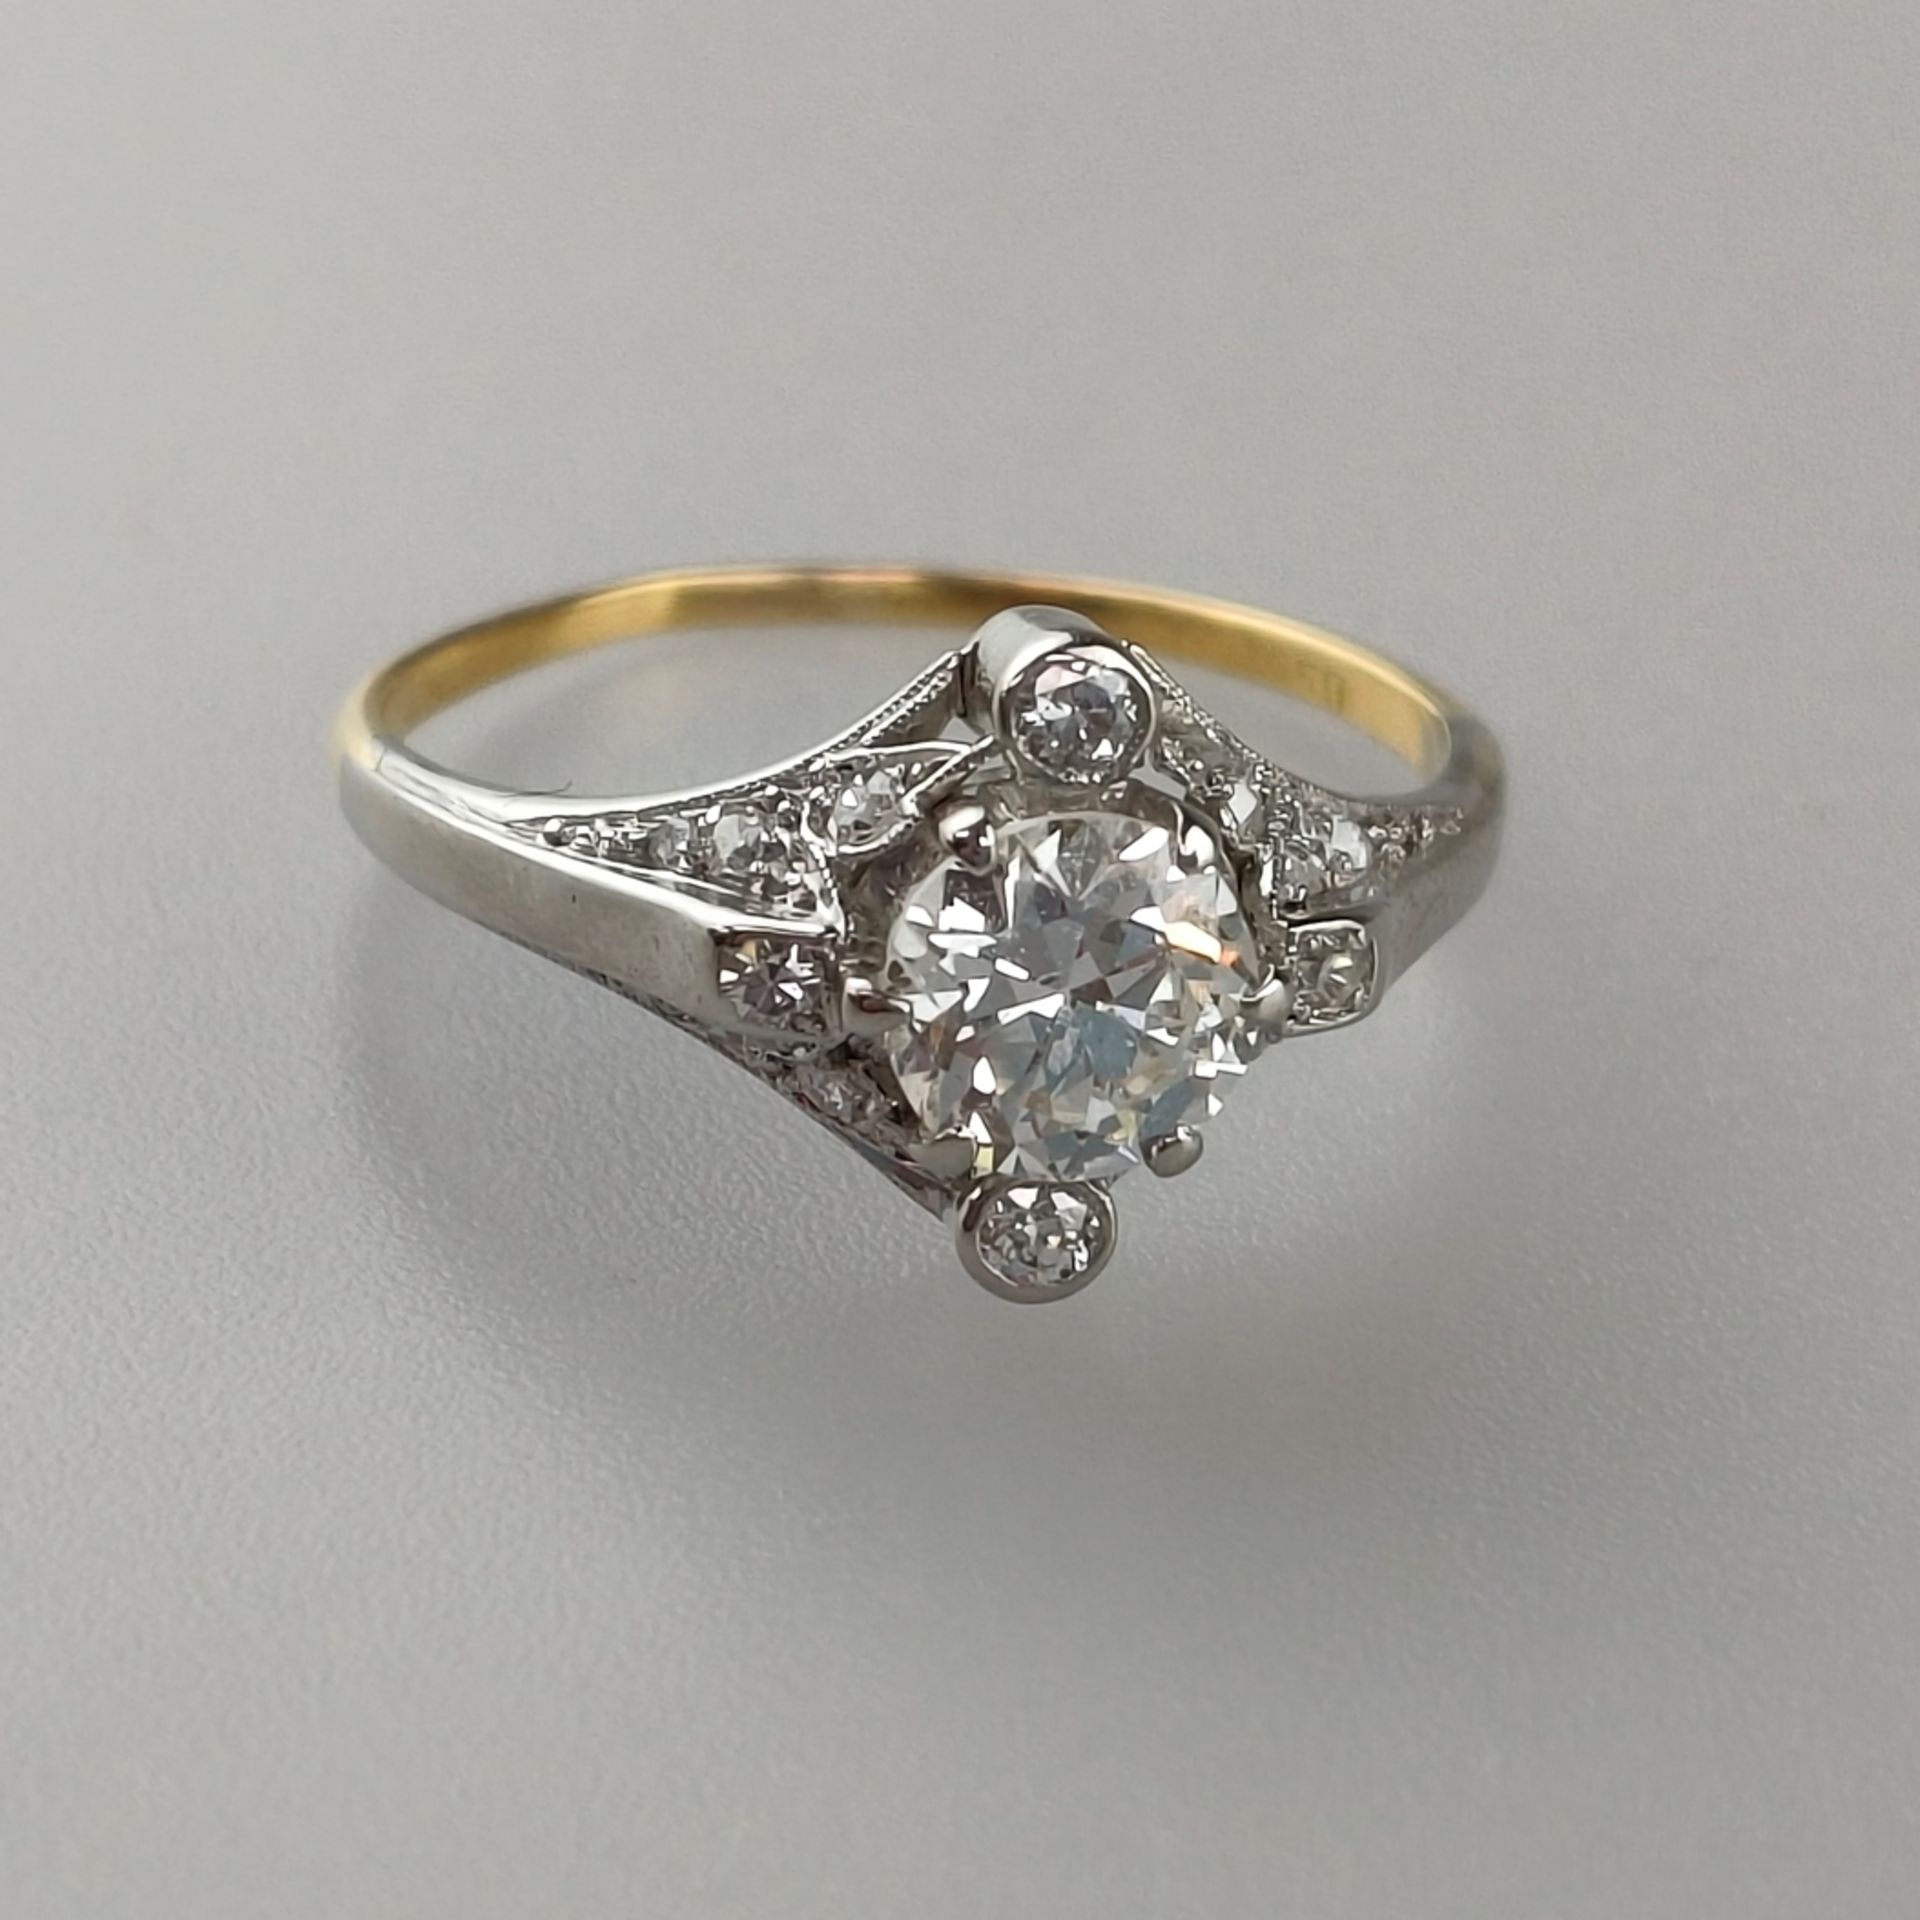 Diamantring - Weiß-/ Gelbgold 750/000, gestempelt, zentraler Diamant im Brillantschliff von 0,80 ct